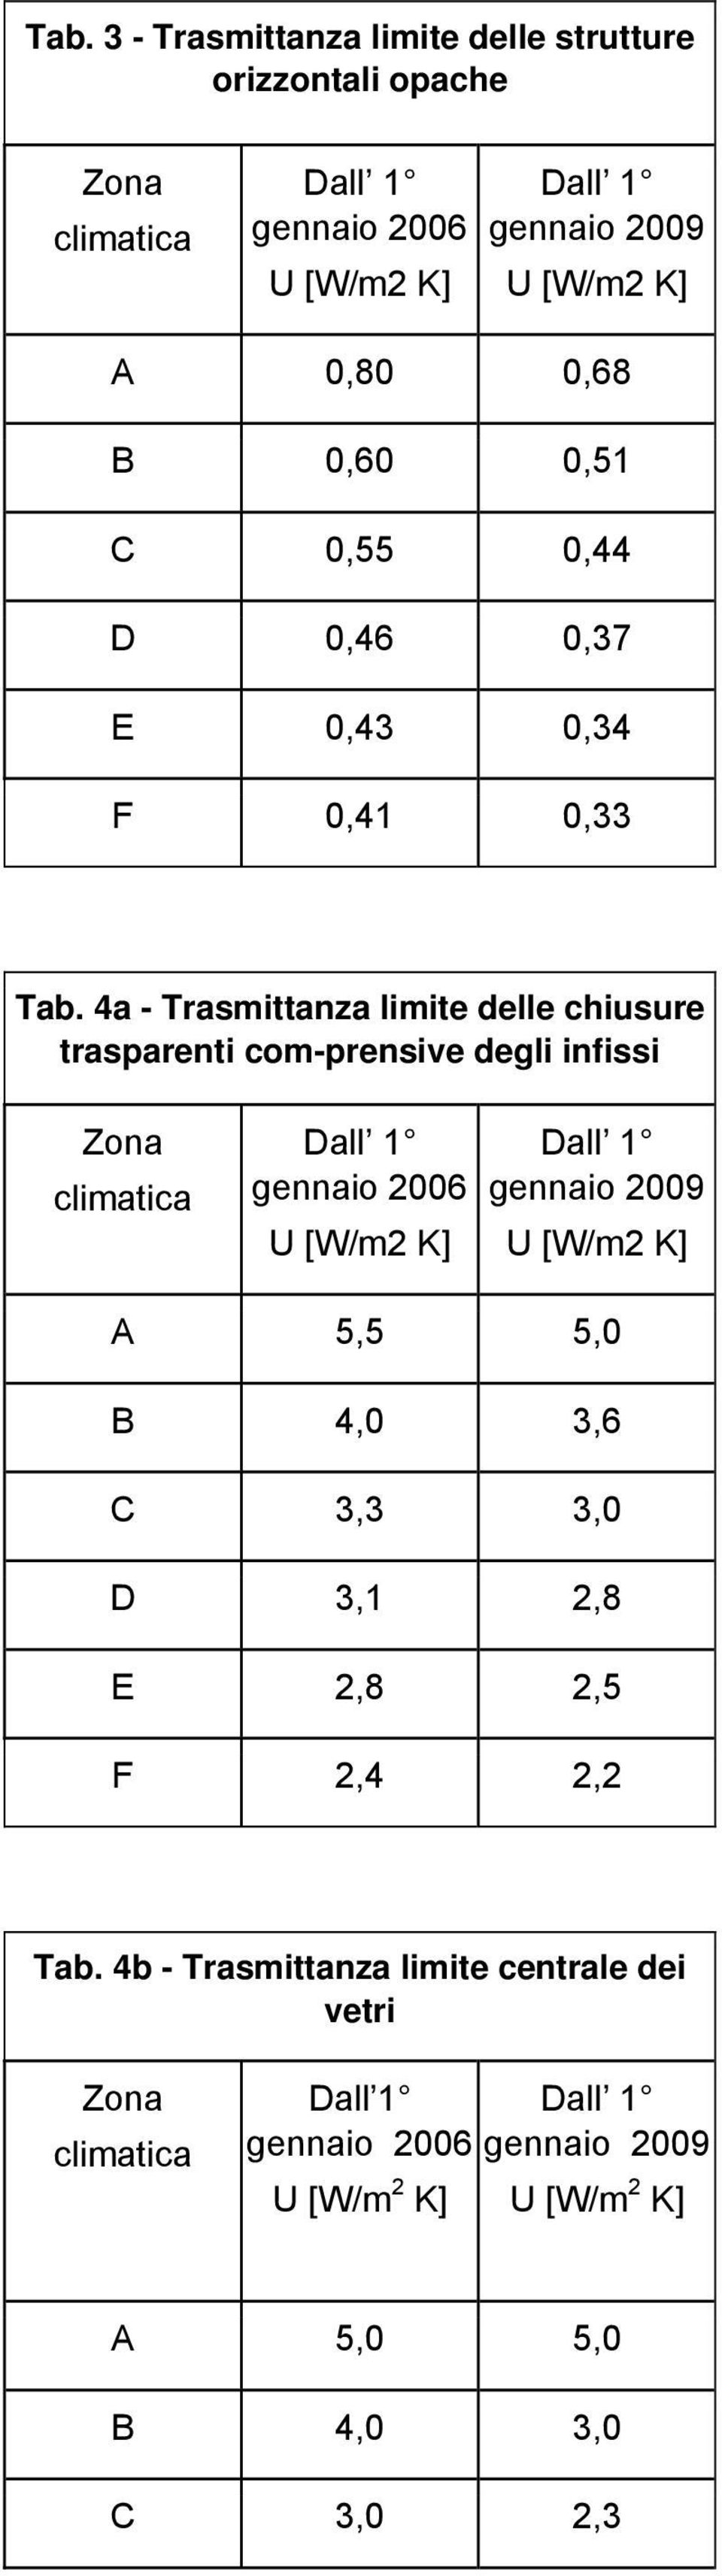 4a - Trasmittanza limite delle chiusure trasparenti com-prensive degli infissi Zona climatica Dall 1 gennaio 2006 U [W/m2 K] Dall 1 gennaio 2009 U